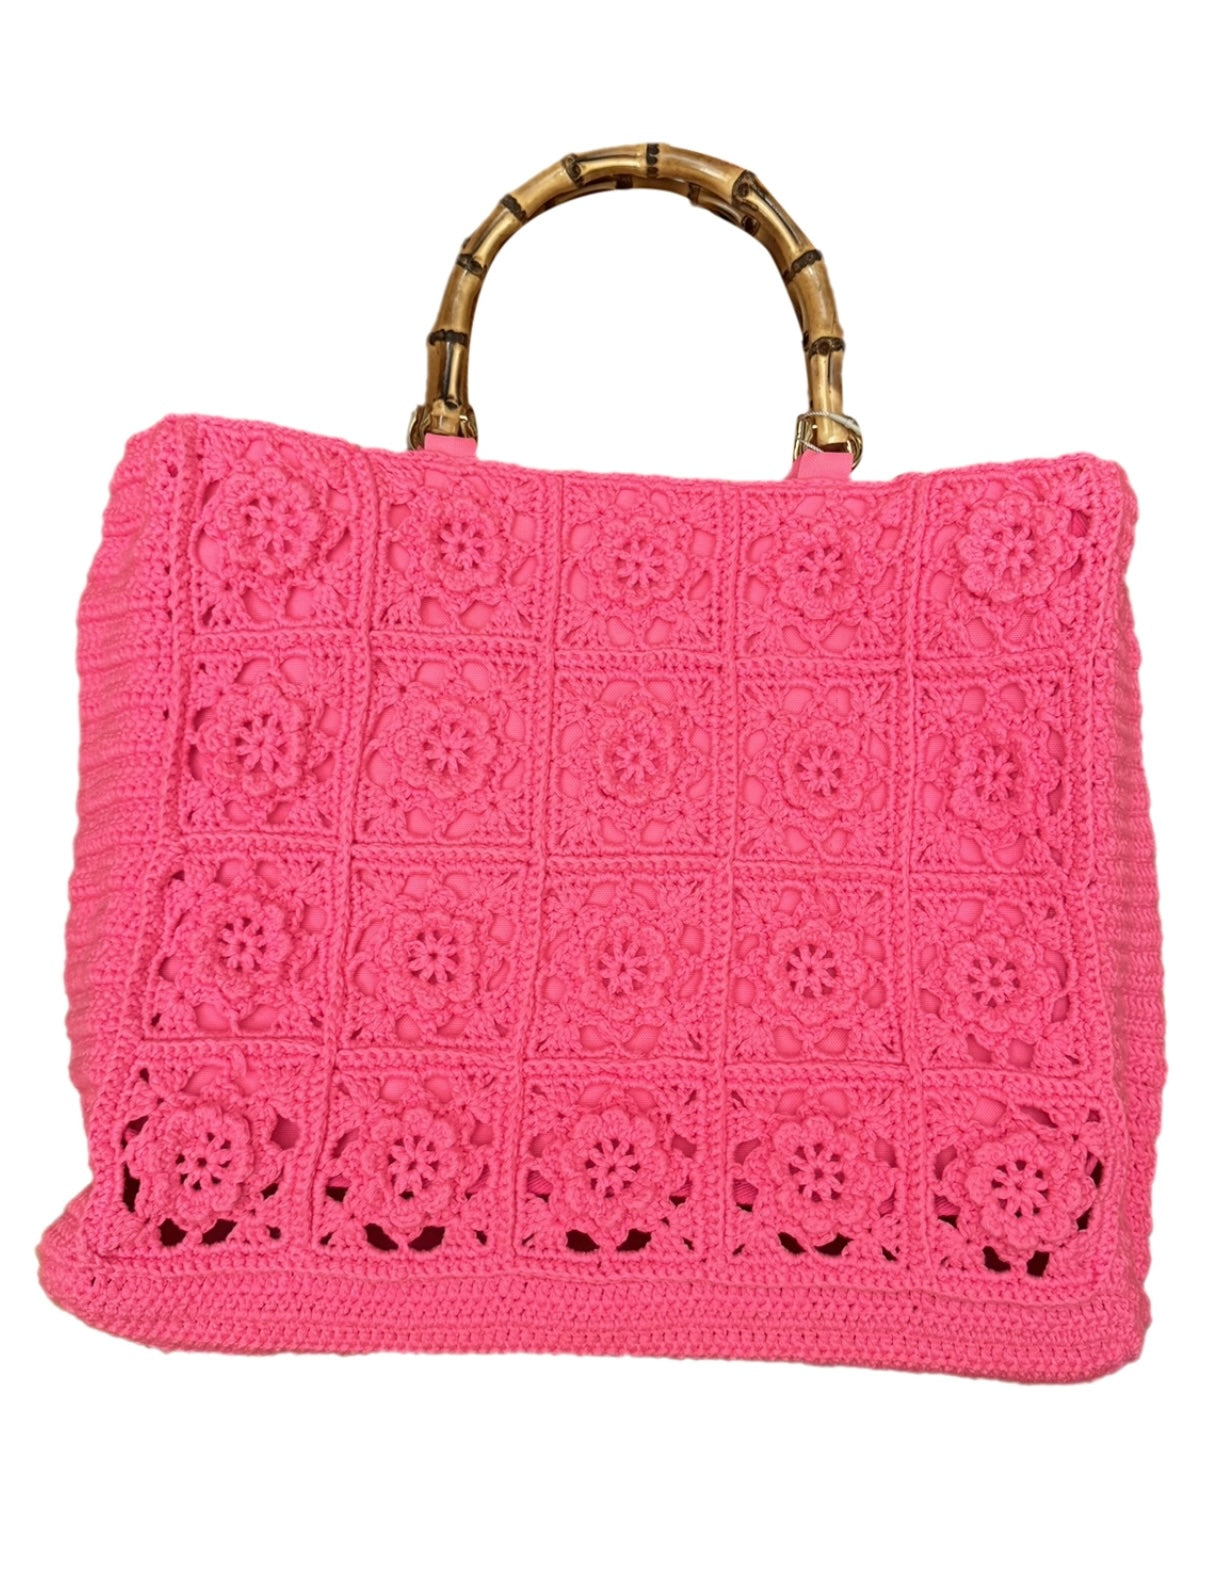 Interdee pink knitted rose beach summer bag